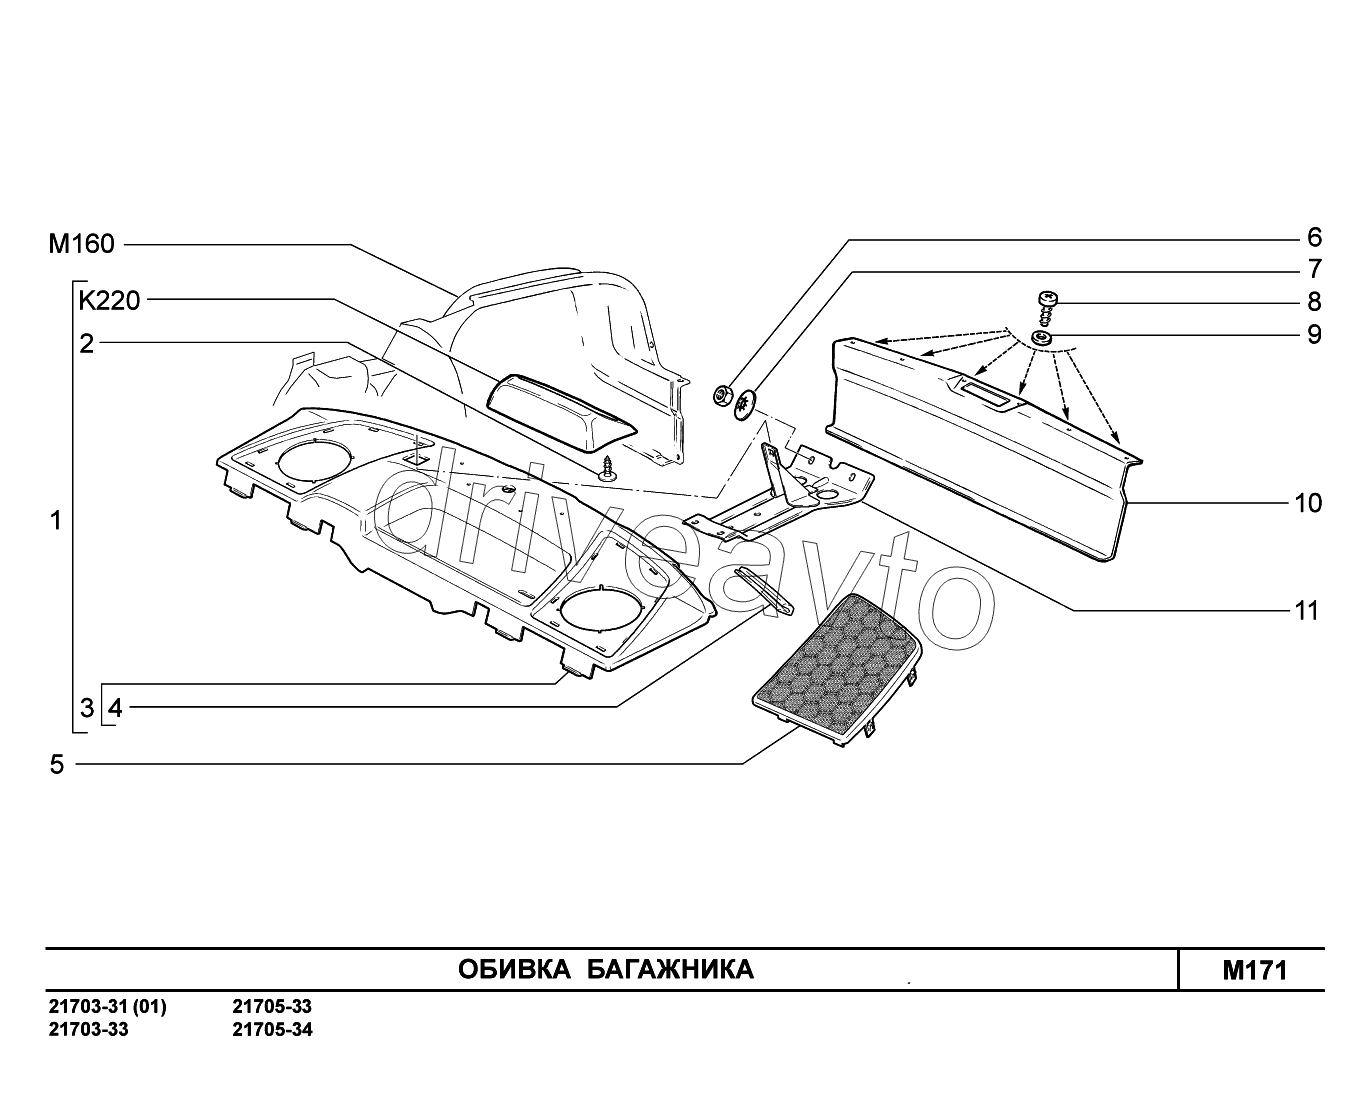 M171. Обивка багажника